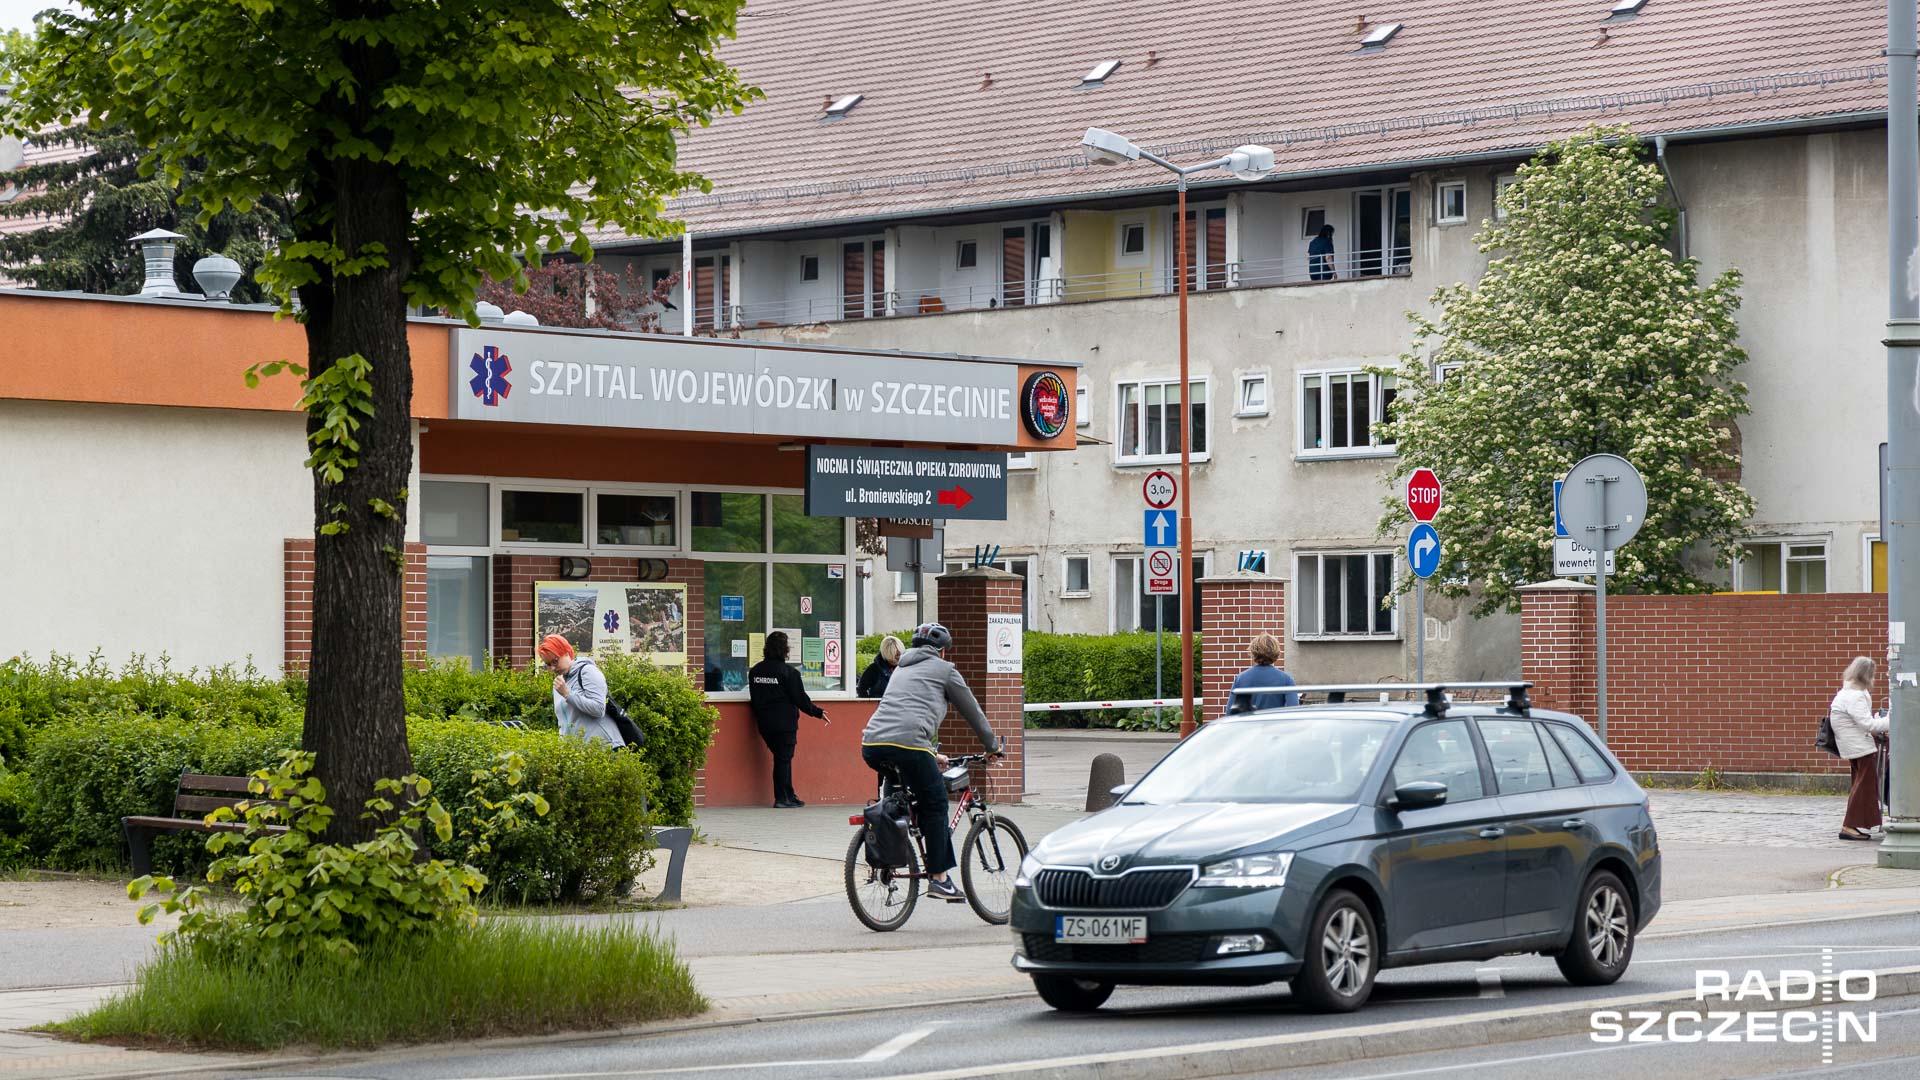 Szpital Wojewódzki w Szczecinie z akredytacją Ministerstwa Zdrowia